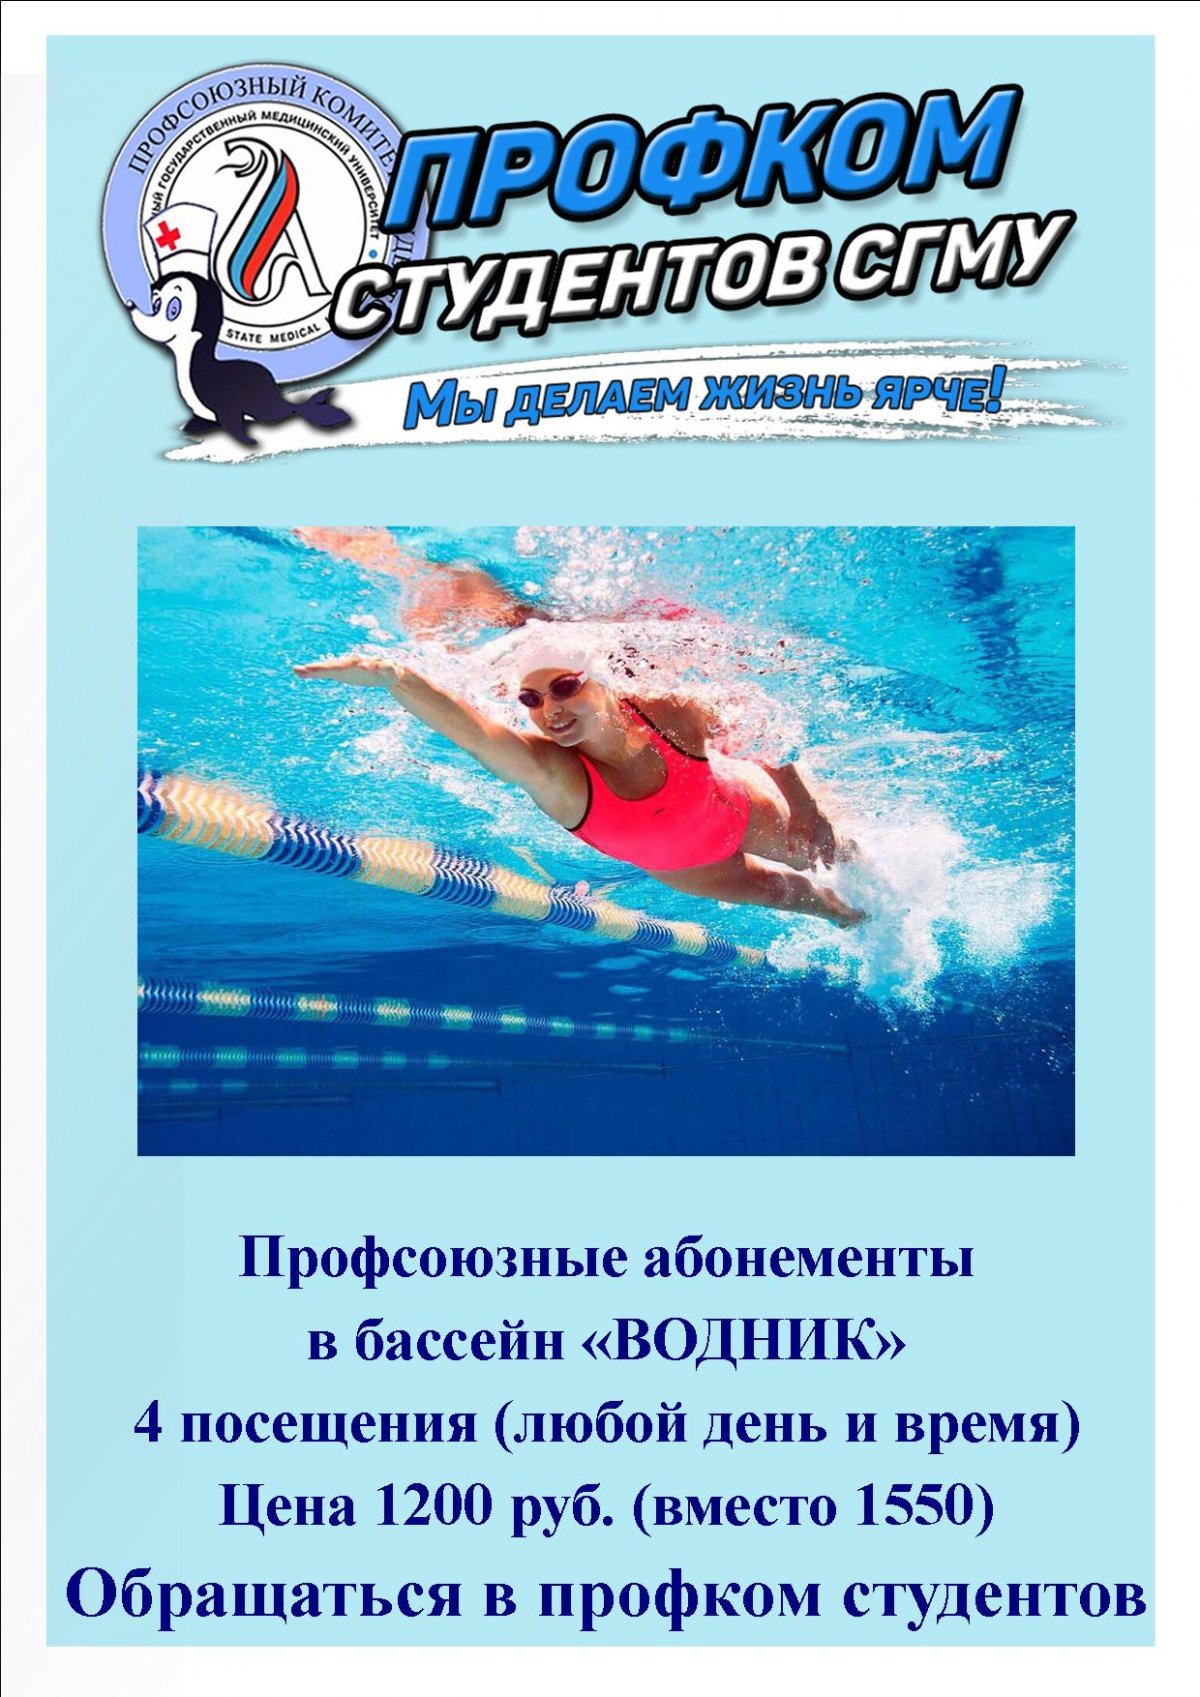 Для любителей плаванья 🏊‍♂ : в профкоме студентов появились абонементы в бассейн "Водник" по льготной цене для членов профсоюза: 4 посещения ( в любой день и время) 1200 руб. (вместо 1550 руб.)